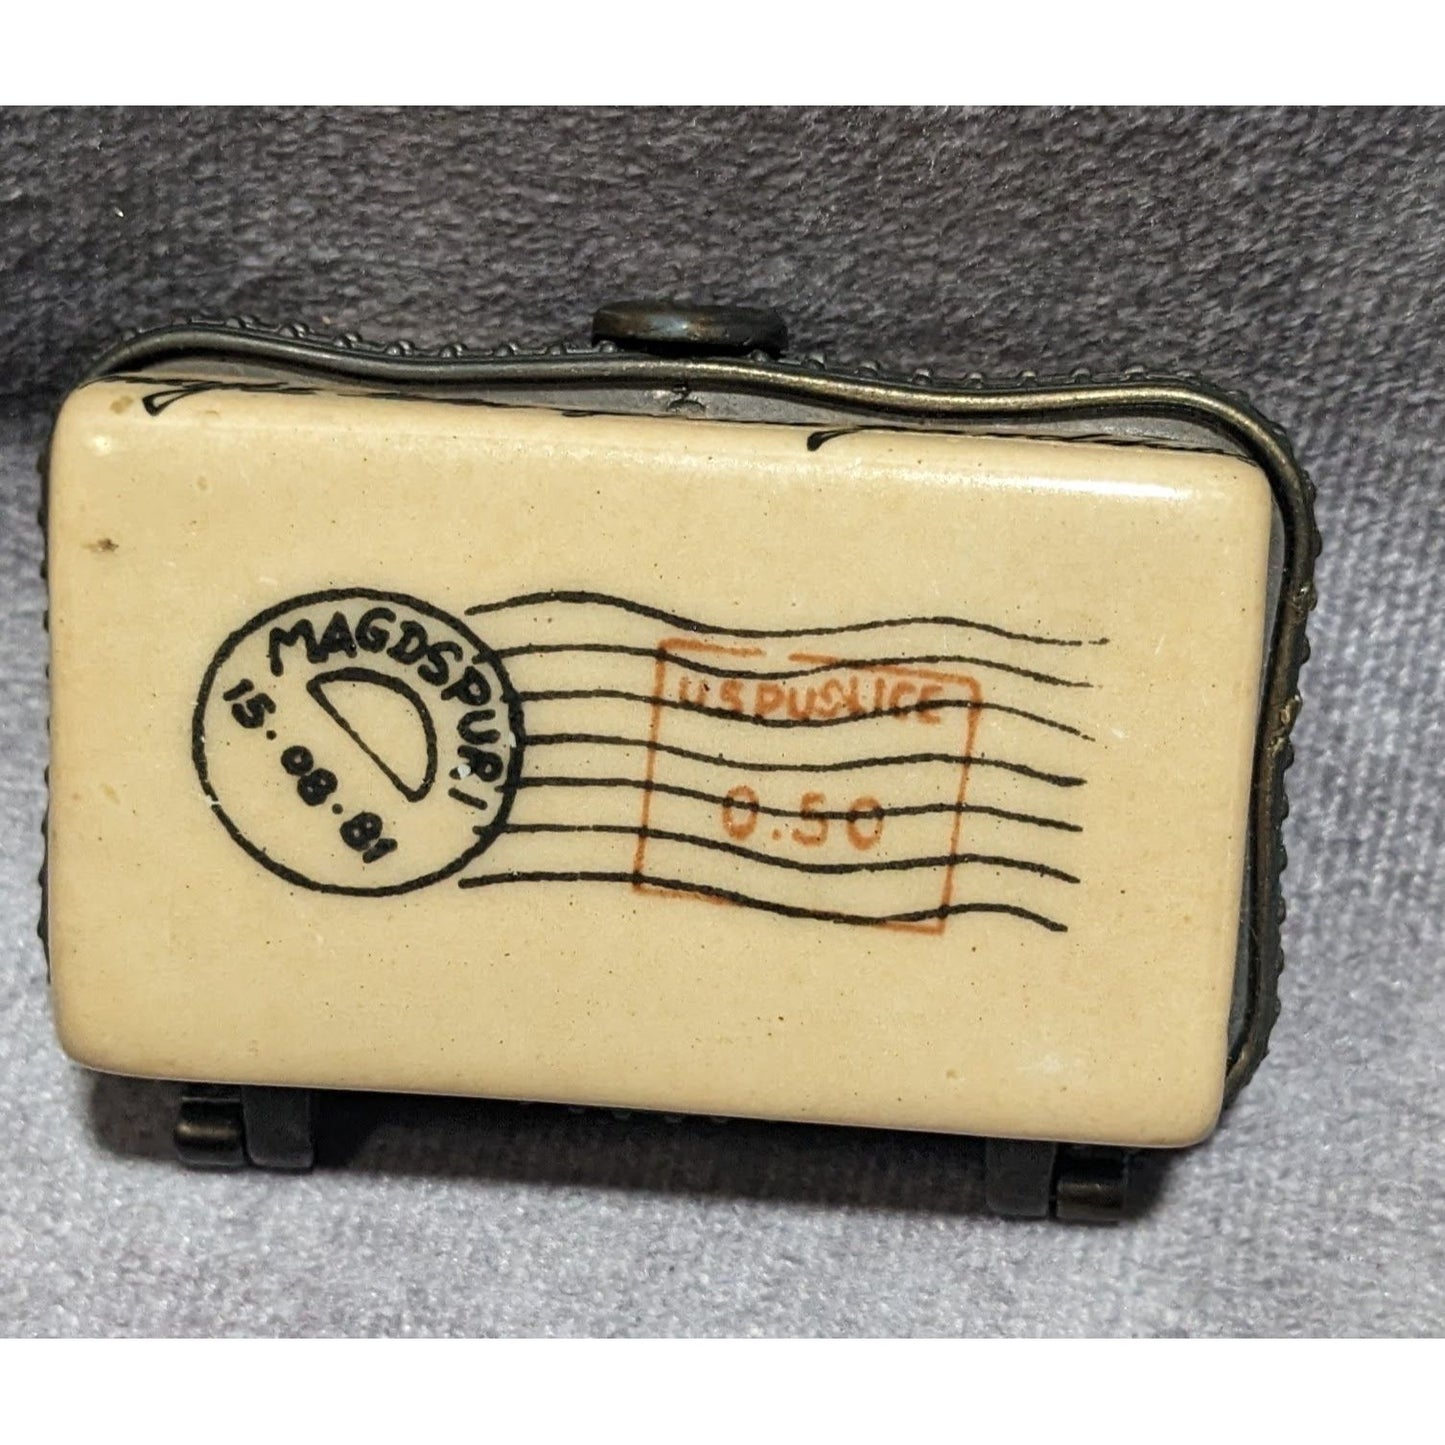 Vintage Ceramic Travel Ephemera Trinket Box